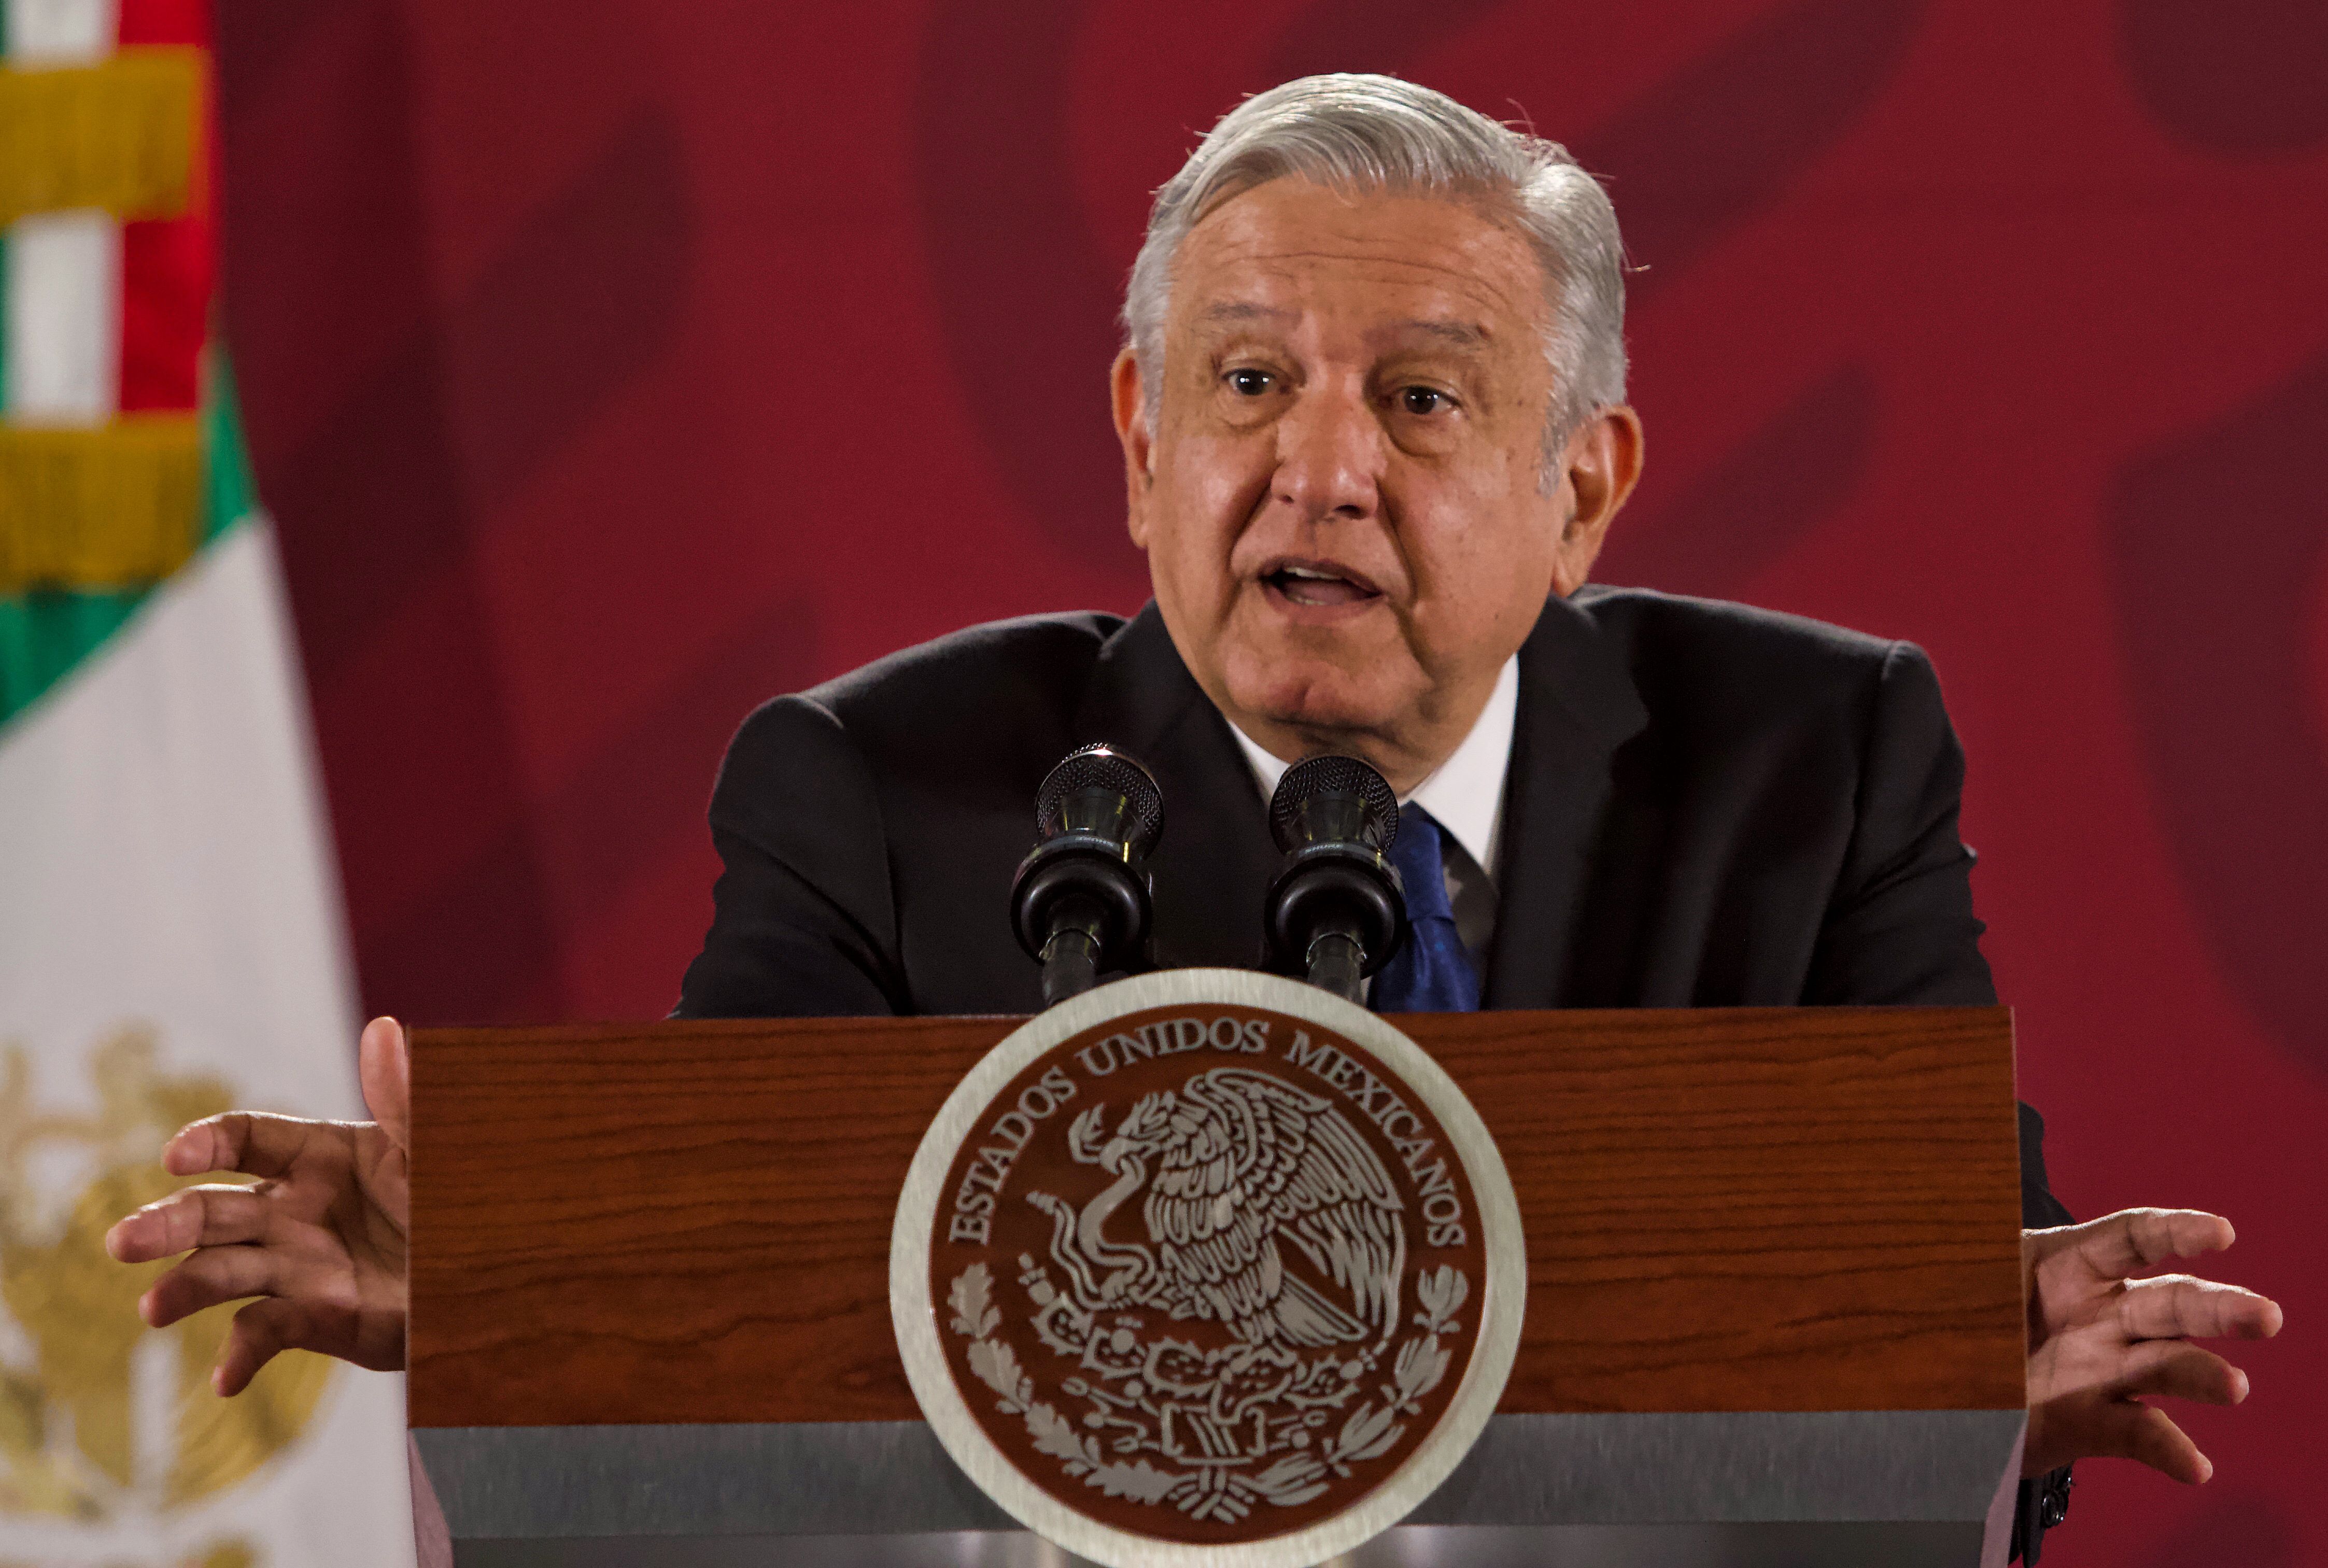 El presidente Andrés Manuel López Obrador, calificó de "masoquistas" a quienes prefieren el pasado